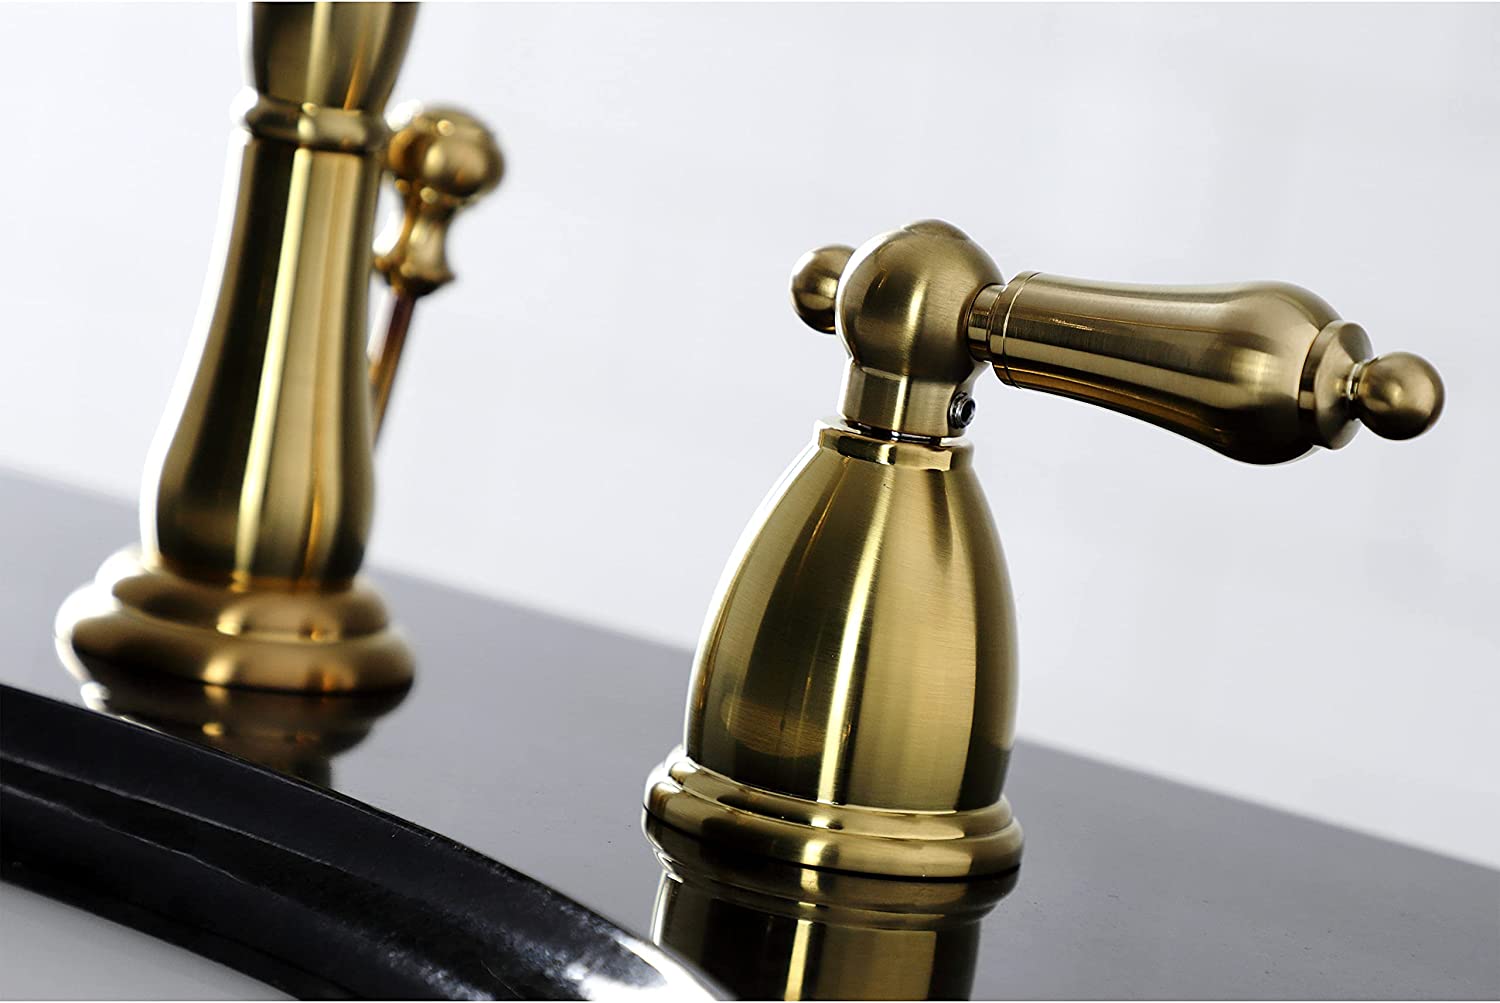 Kingston Brass KB1977AL 8 in. Widespread Bathroom Faucet, Brushed Brass